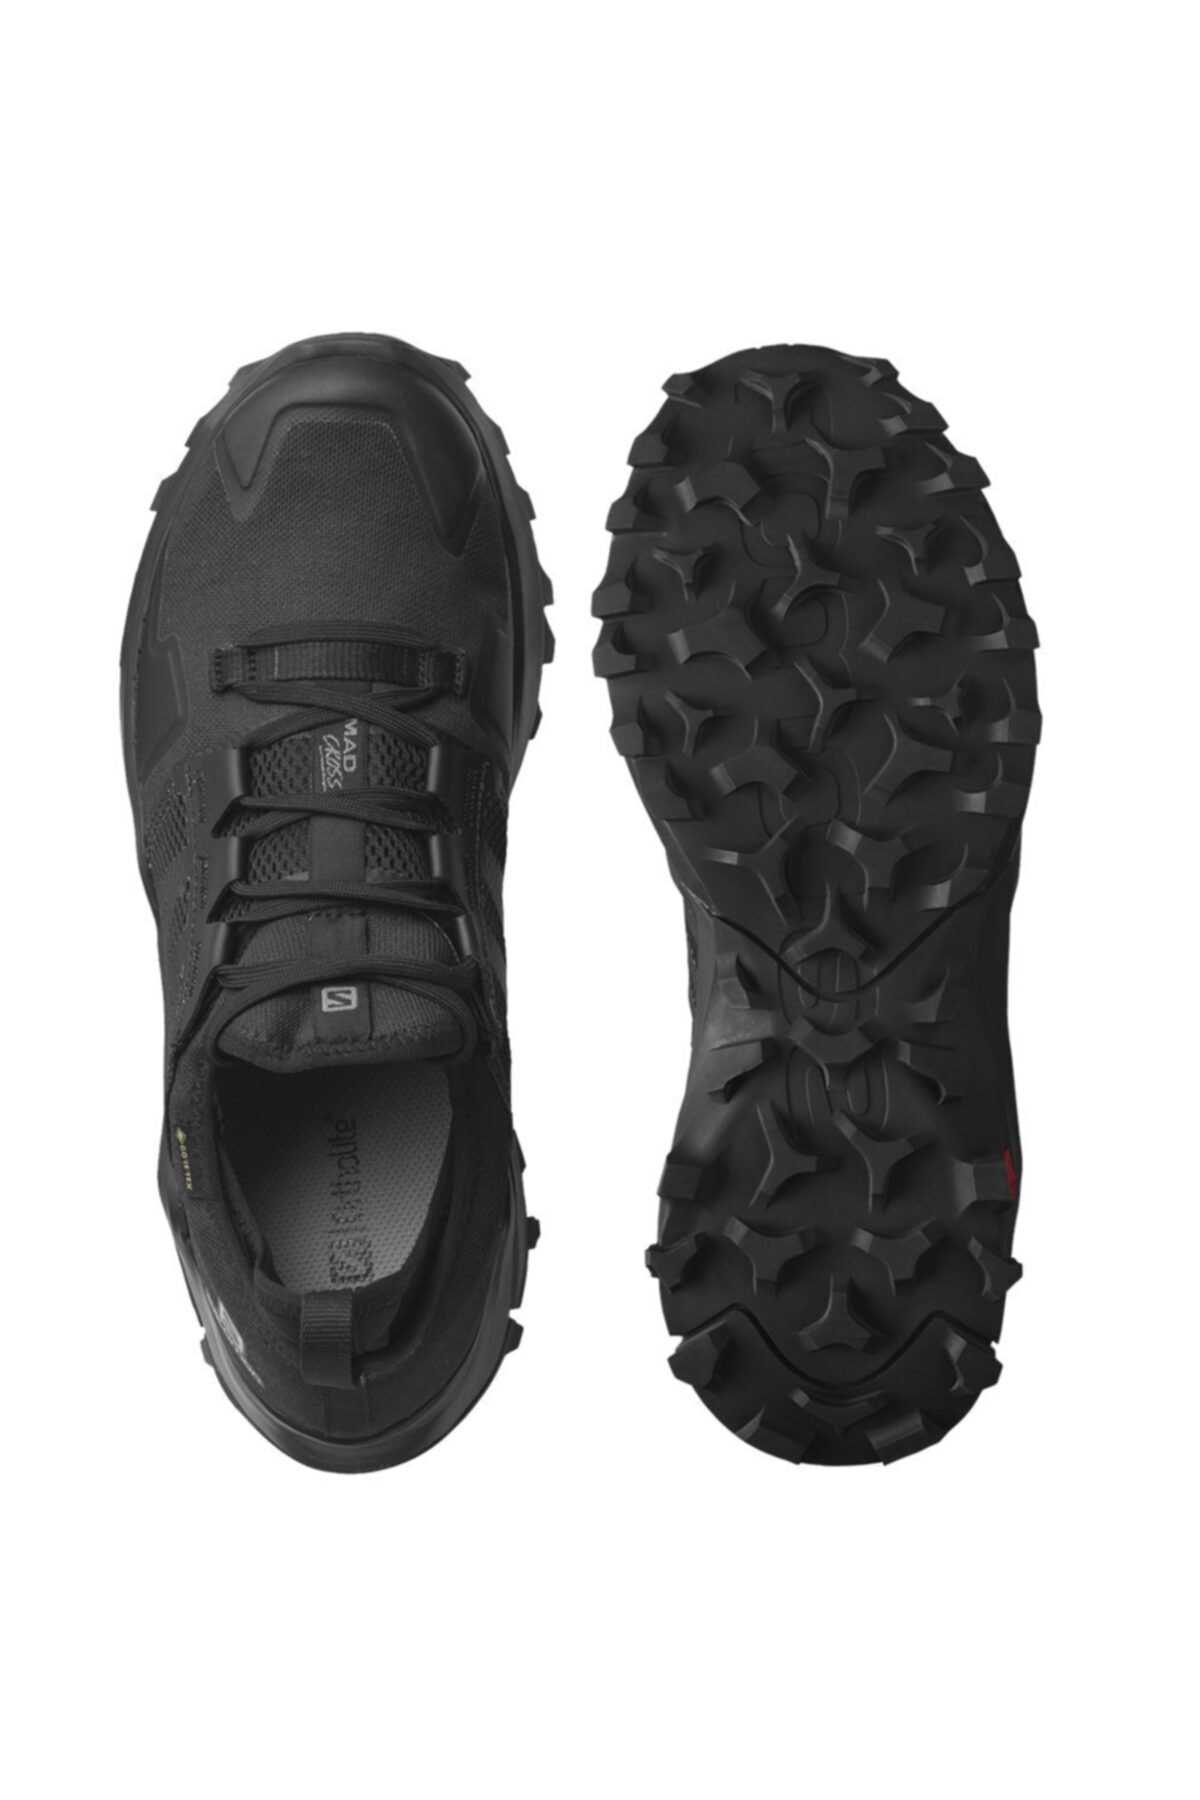 خرید انلاین کفش کوهنوردی مردانه برند Salomon رنگ مشکی کد ty133632607